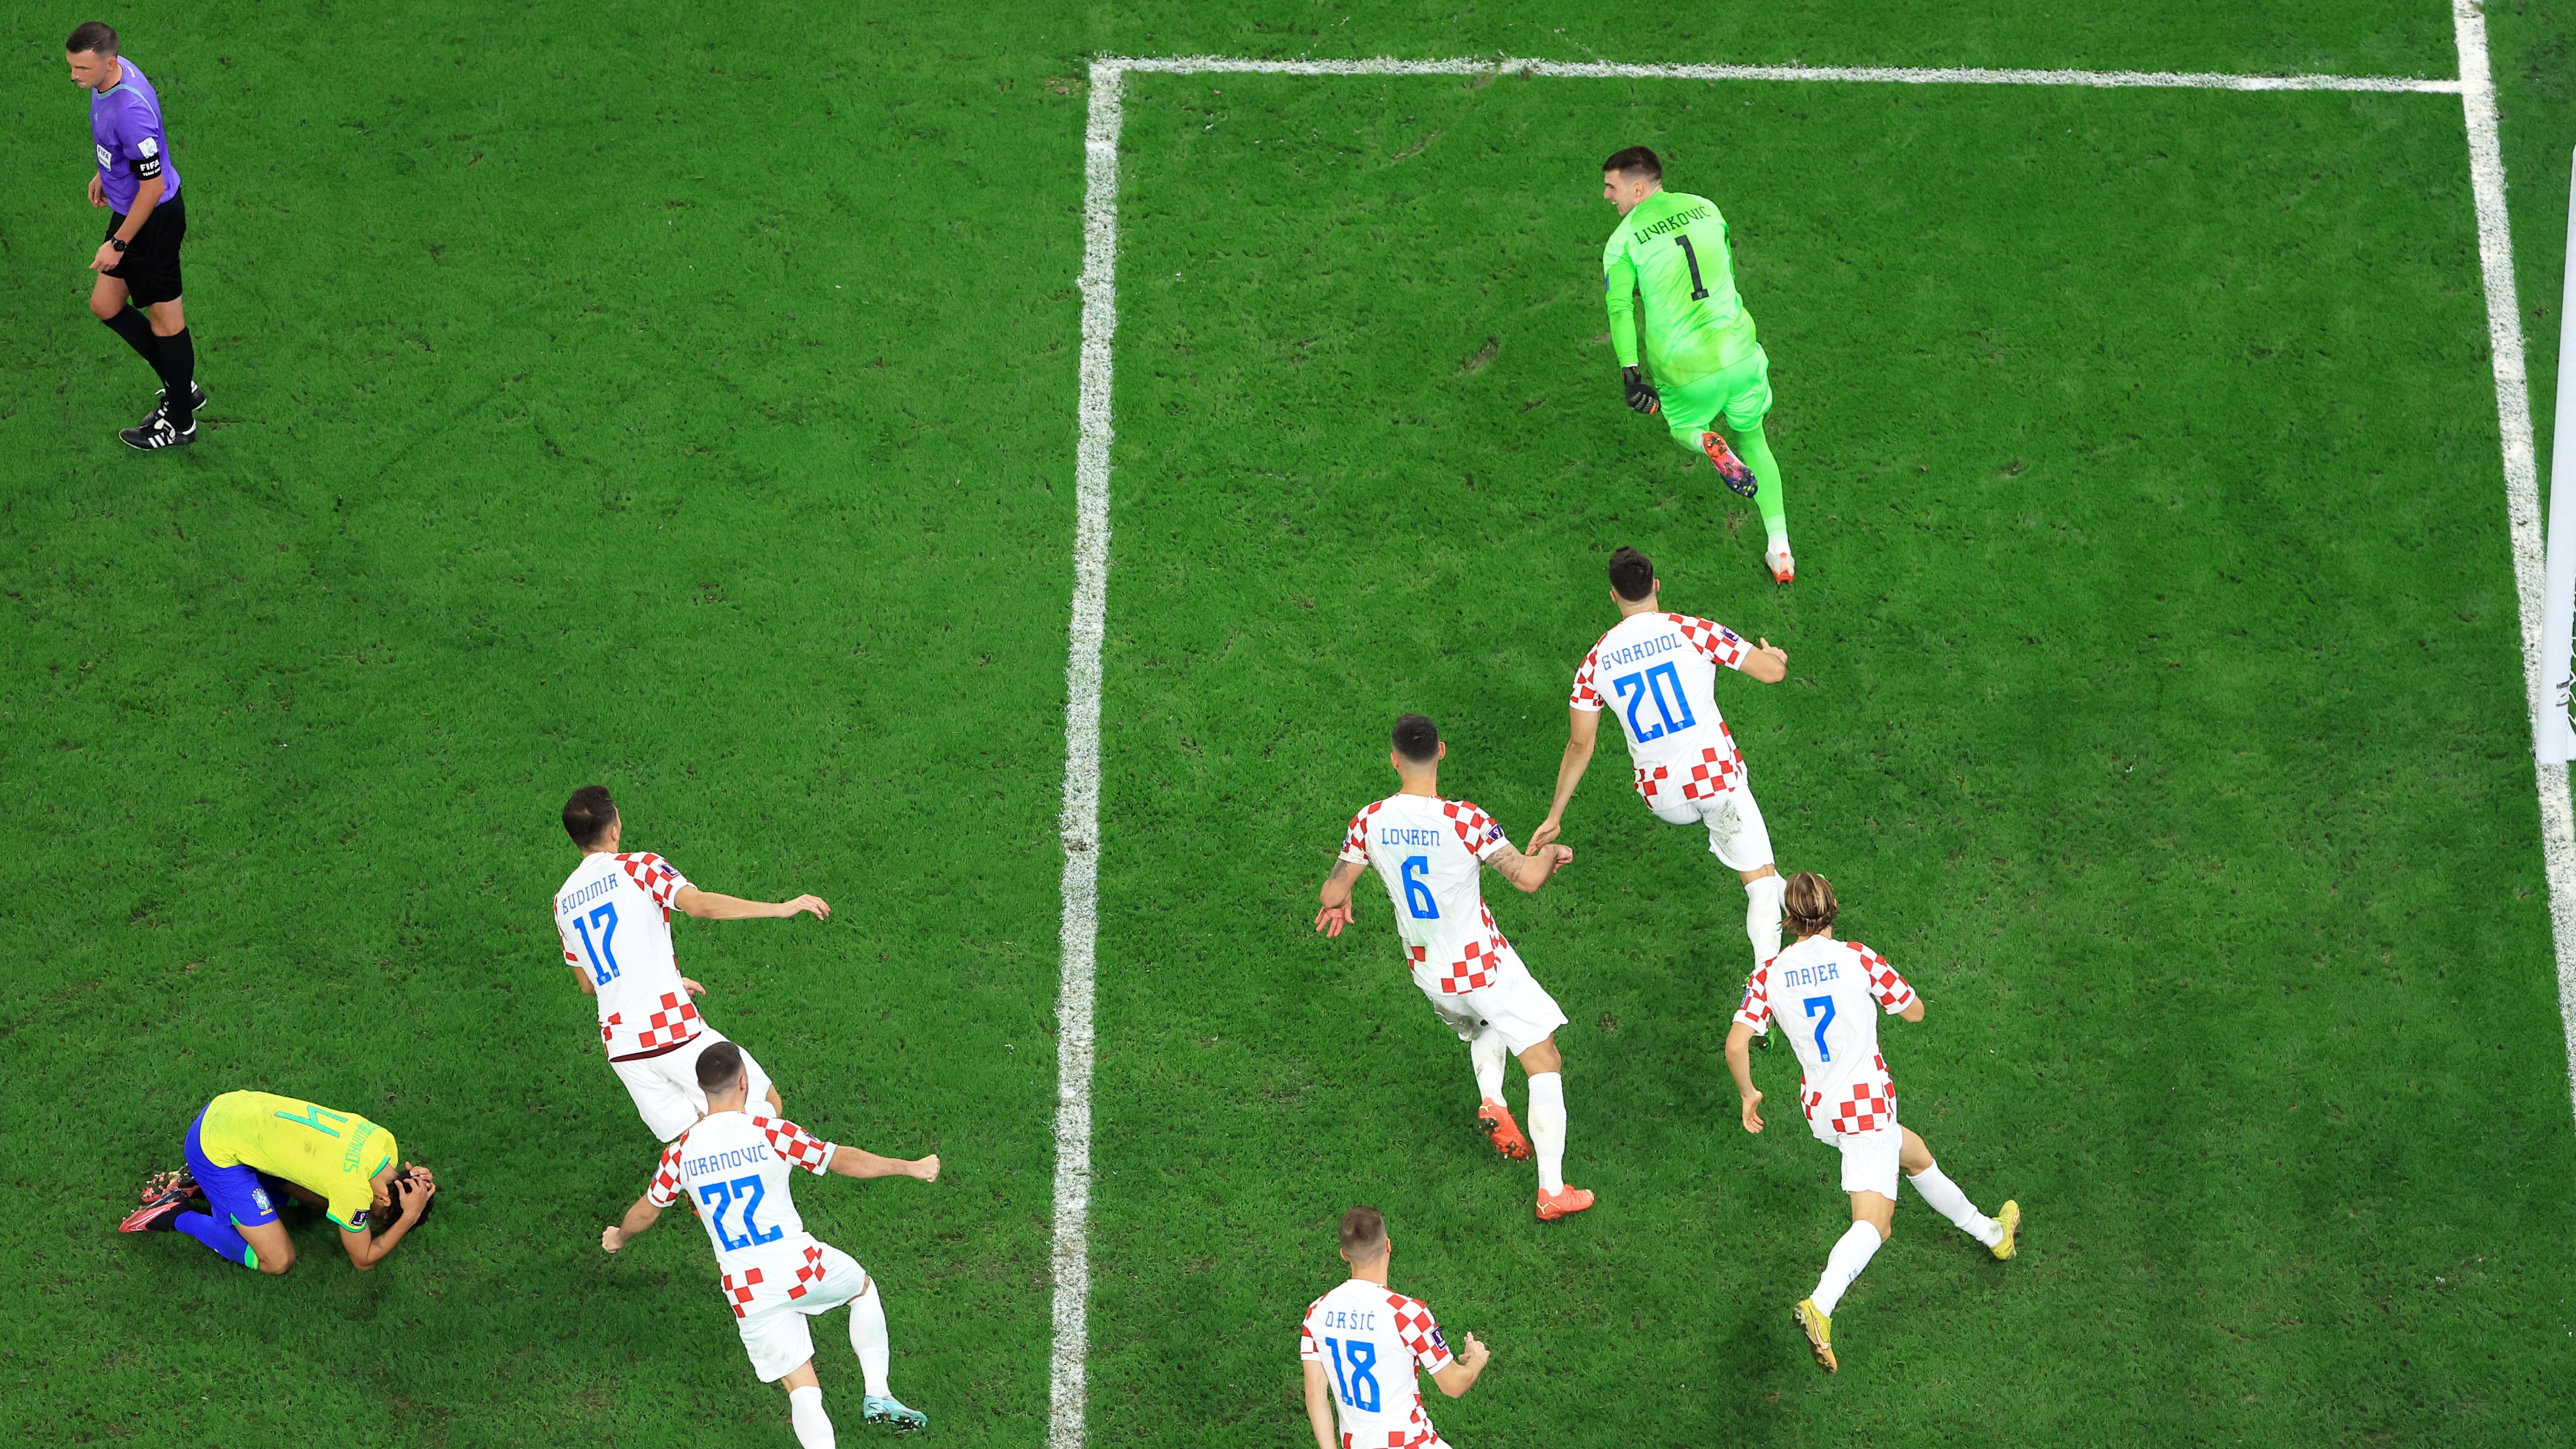 Croatas comemorando a classificação diante do Brasil (Crédito: Getty Images)